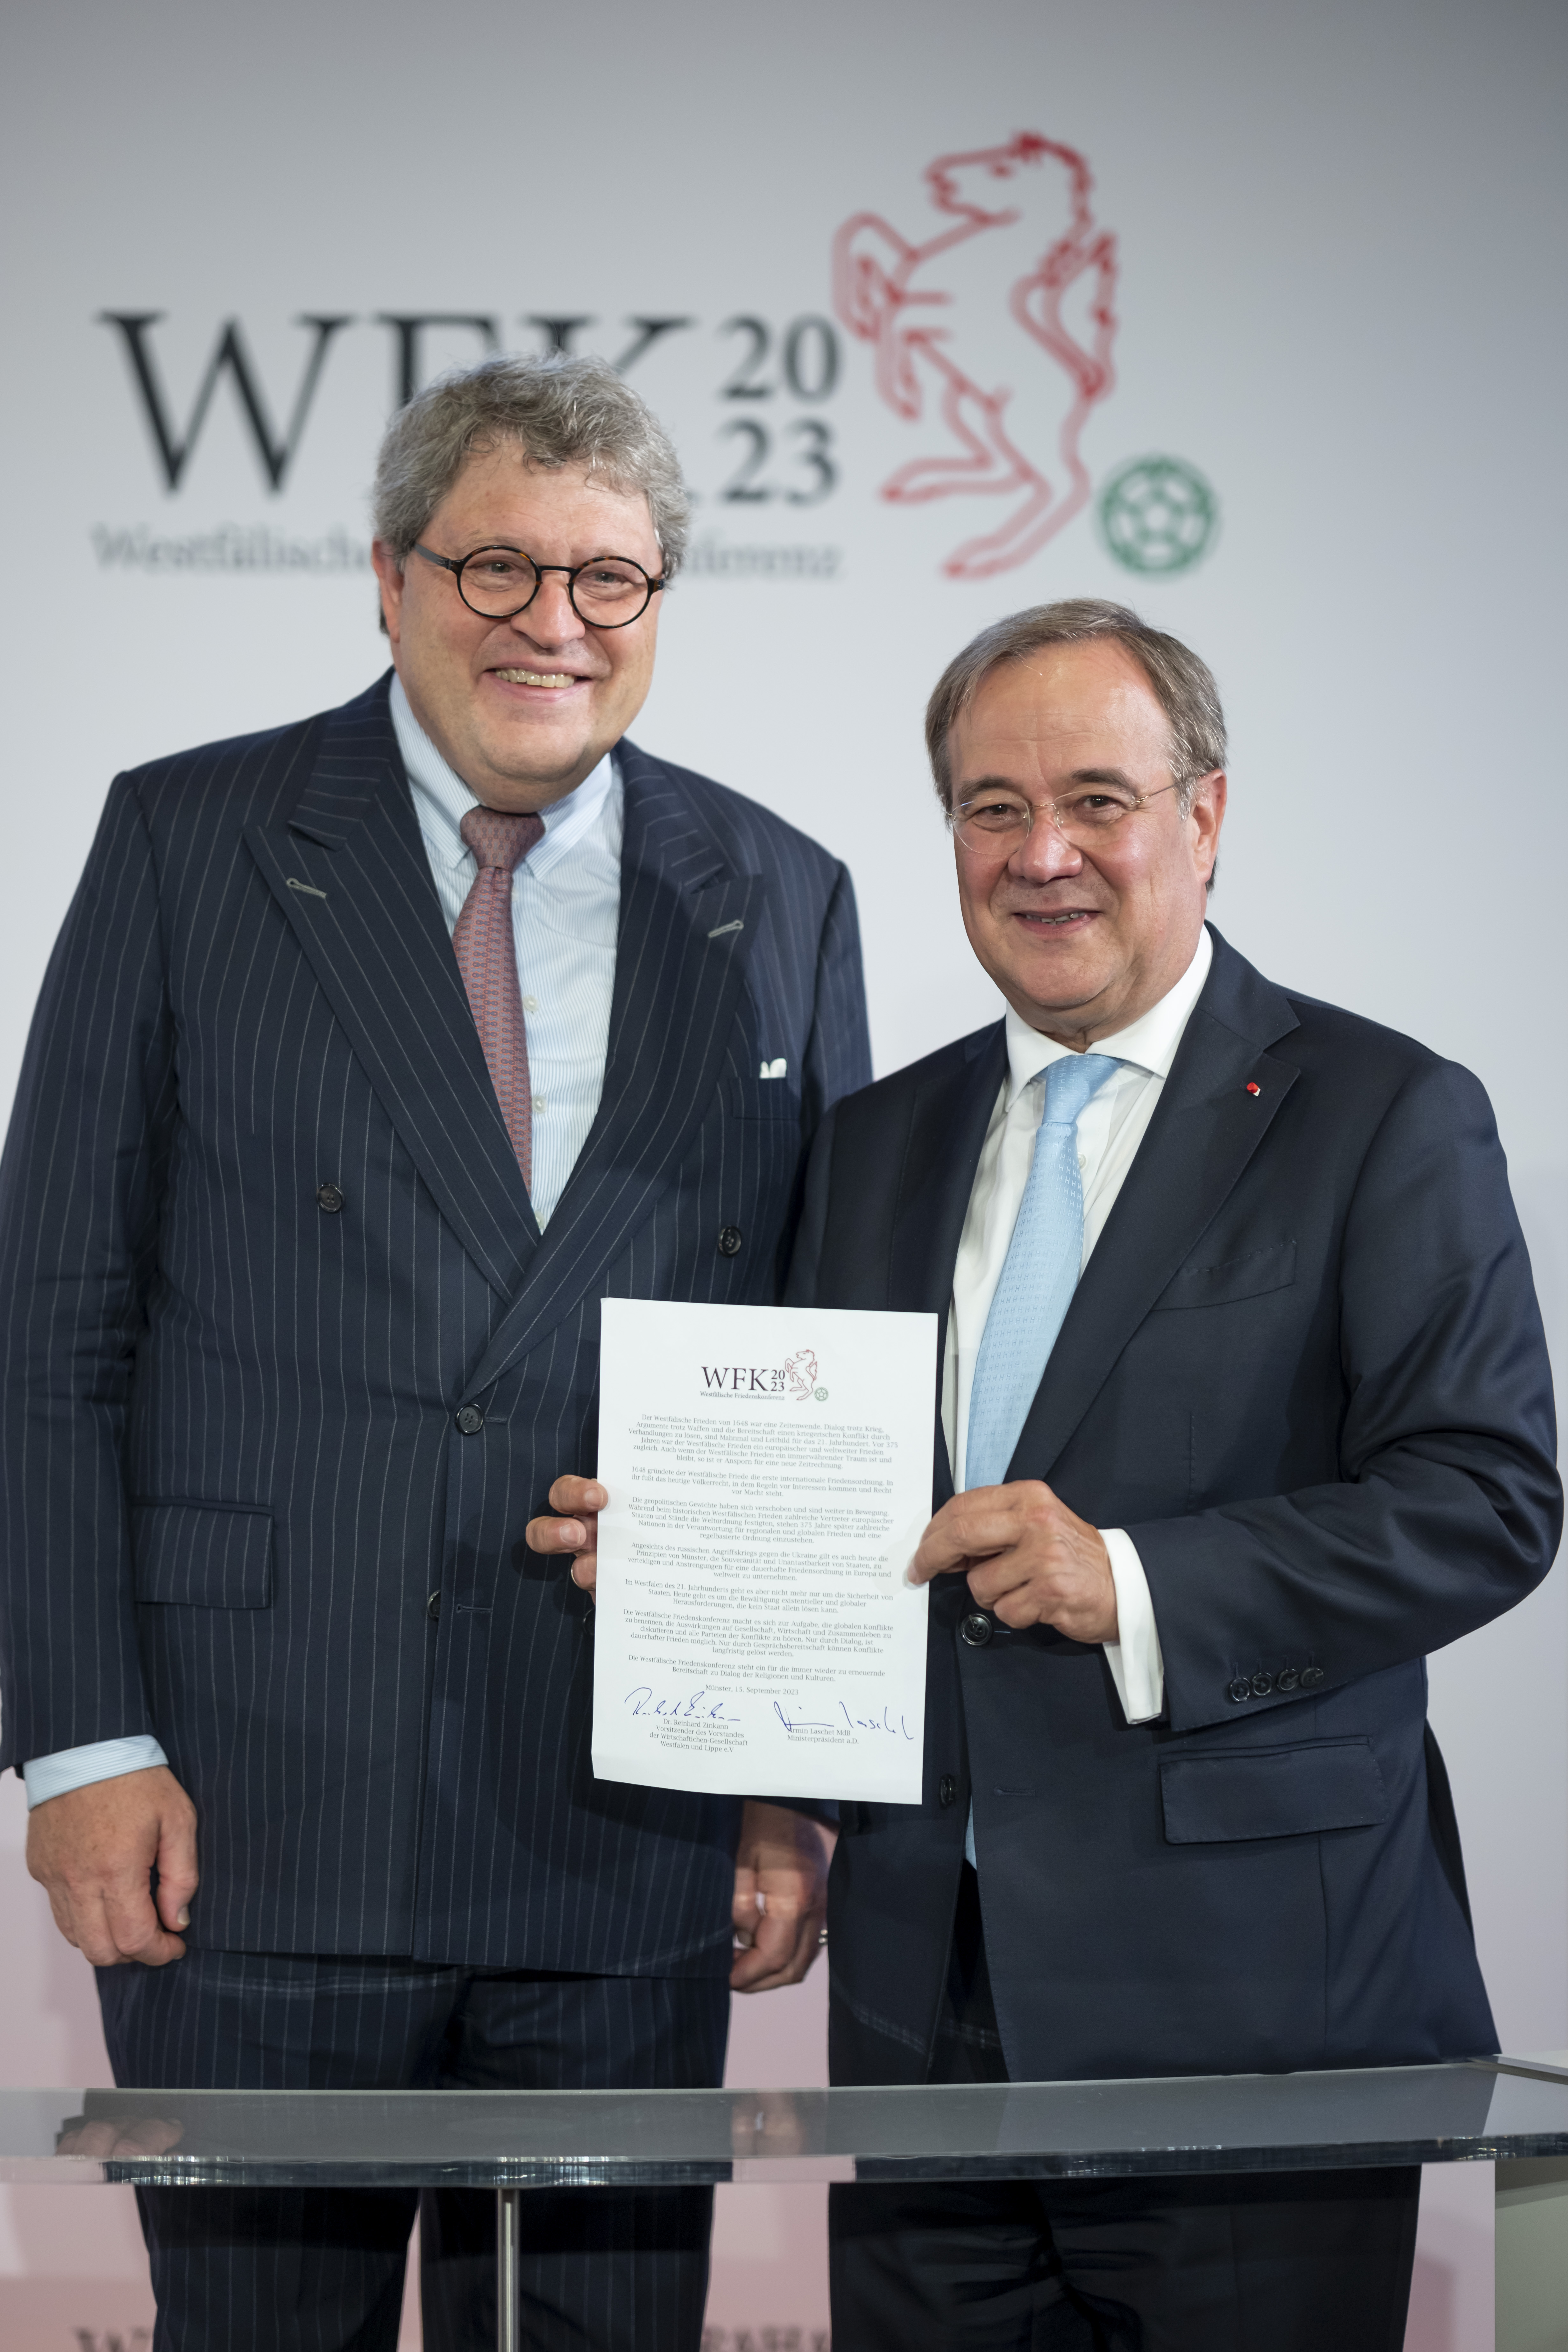  Mit der Abschlusserklärung der Konferenz: Dr. Reinhard Zinkann, Vorsitzender der WWL, und Konferenzleiter Armin Laschet 